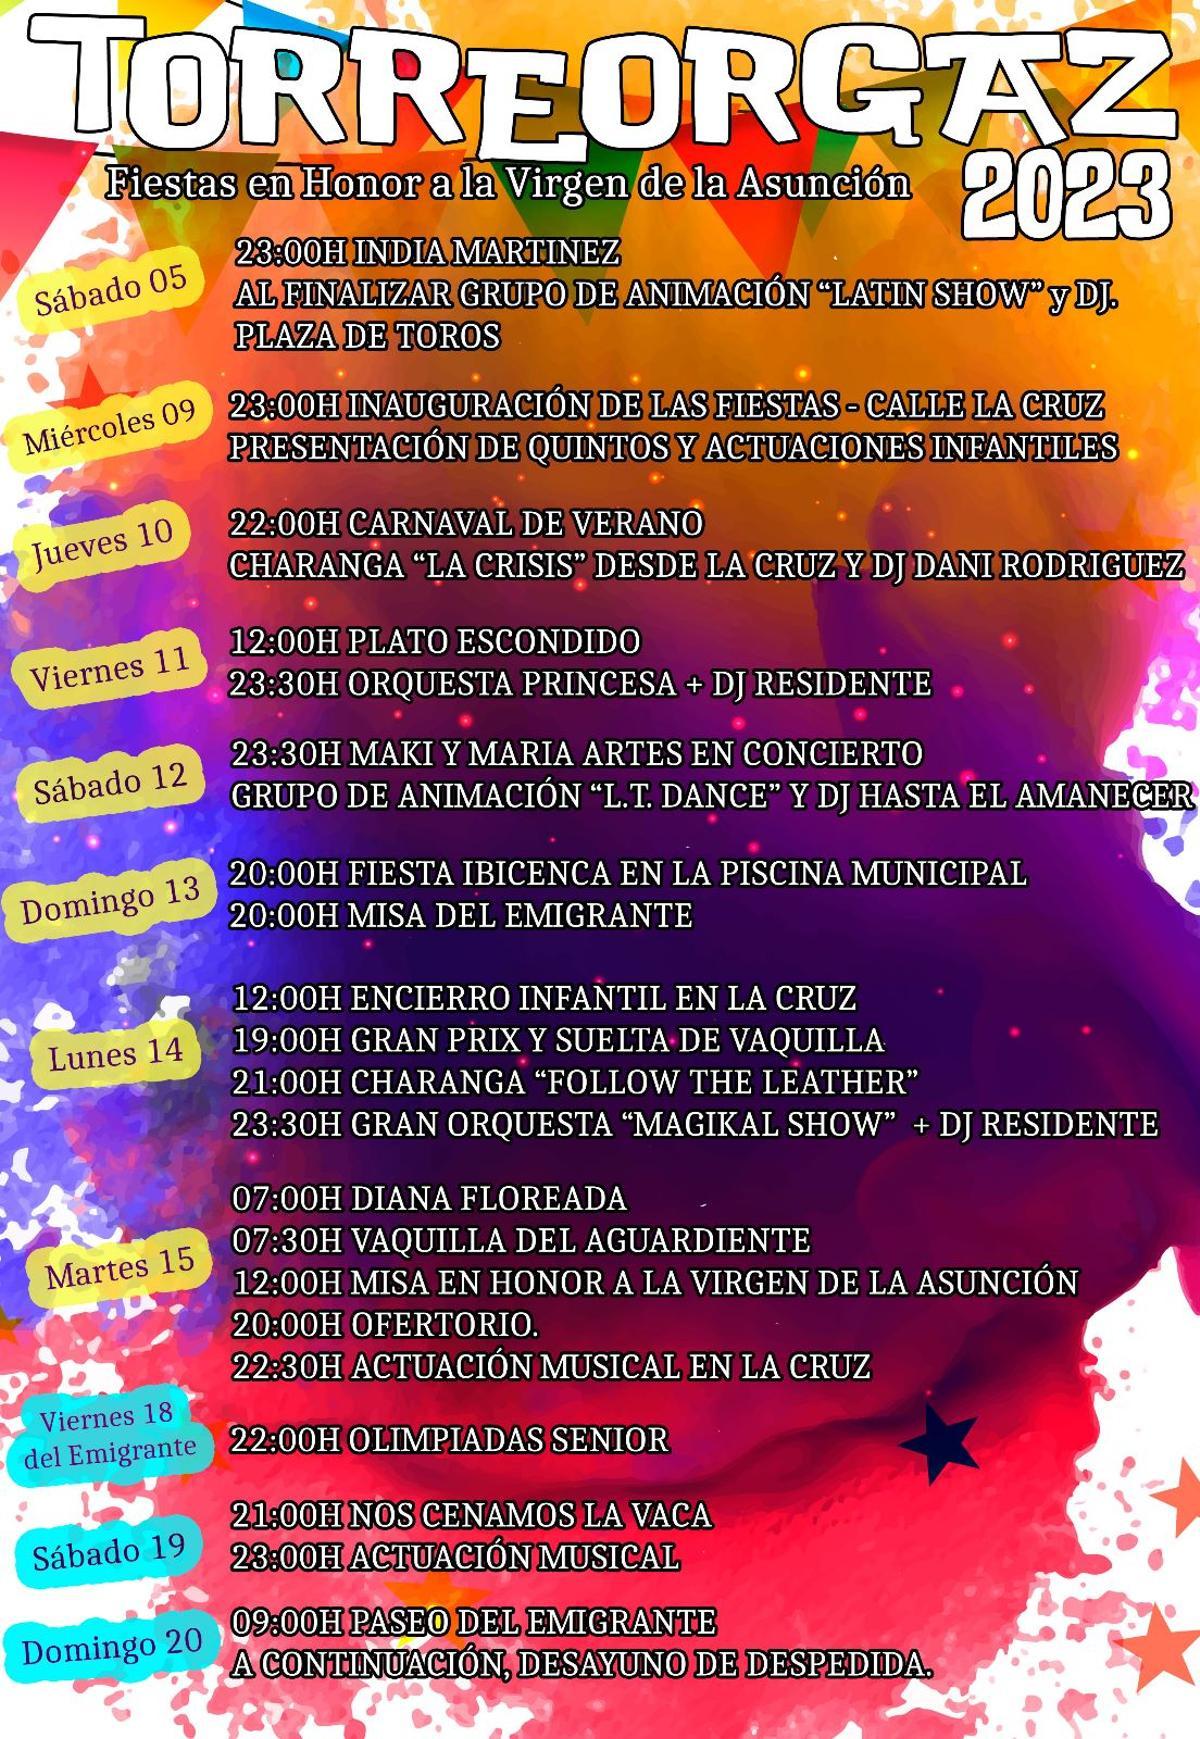 Programa de las Fiestas de la Virgen de la Asunción de Torreorgaz.